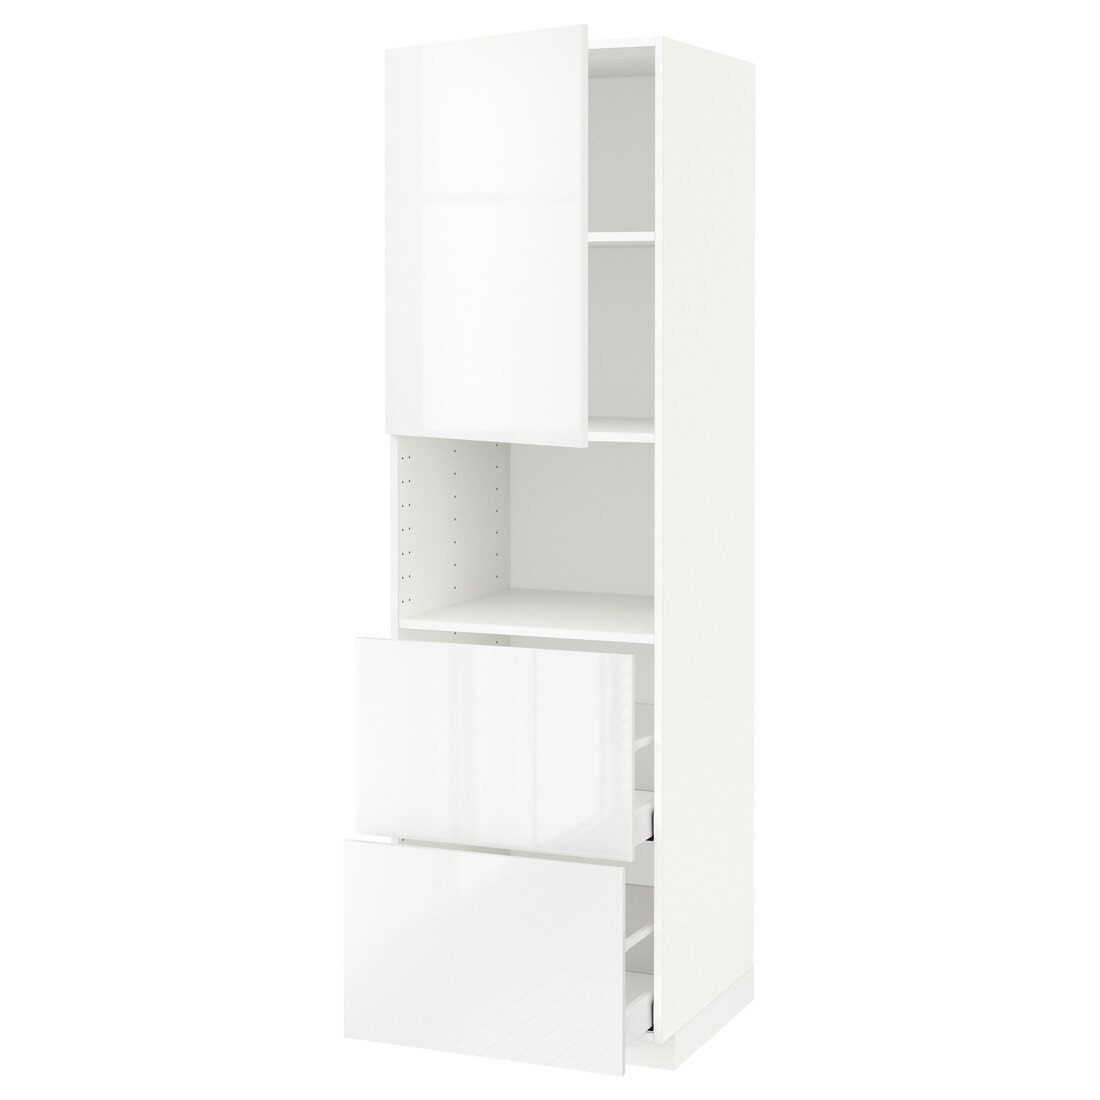 METOD МЕТОД / MAXIMERA МАКСИМЕРА Высокий шкаф для микроволновки с дверями / 2 ящика, белый / Ringhult белый, 60x60x200 см